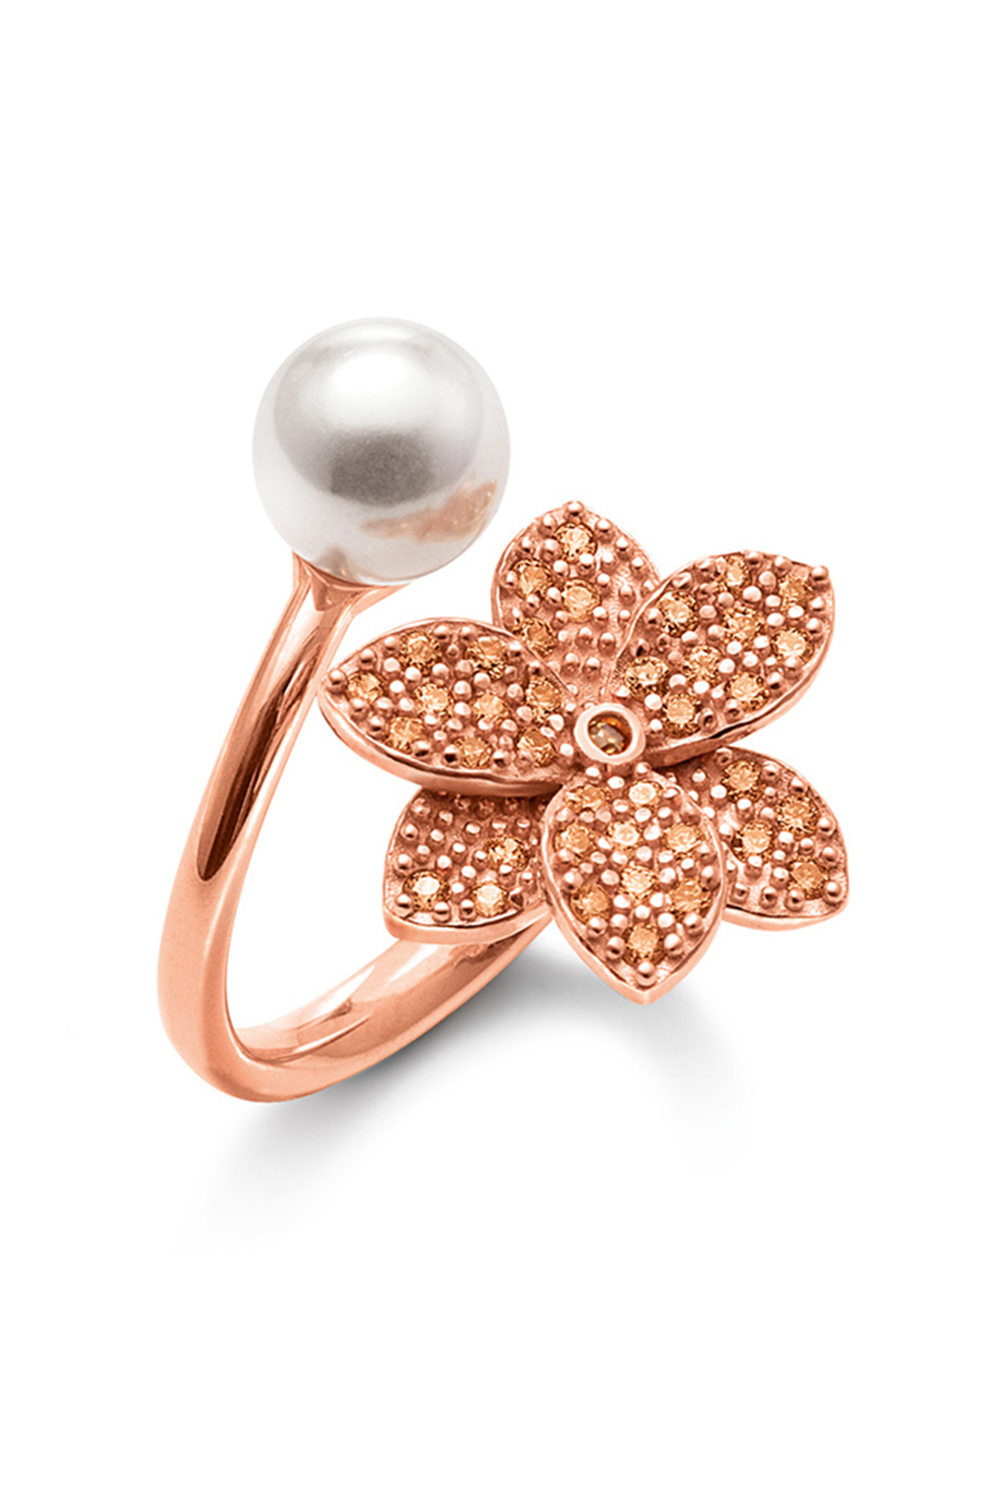 FOLLI FOLLIE – Γυναικείο ασημένιο δαχτυλίδι FOLLI FOLLIE BLOOMING GRACE ροζ χρυσό 3R19S150RSW